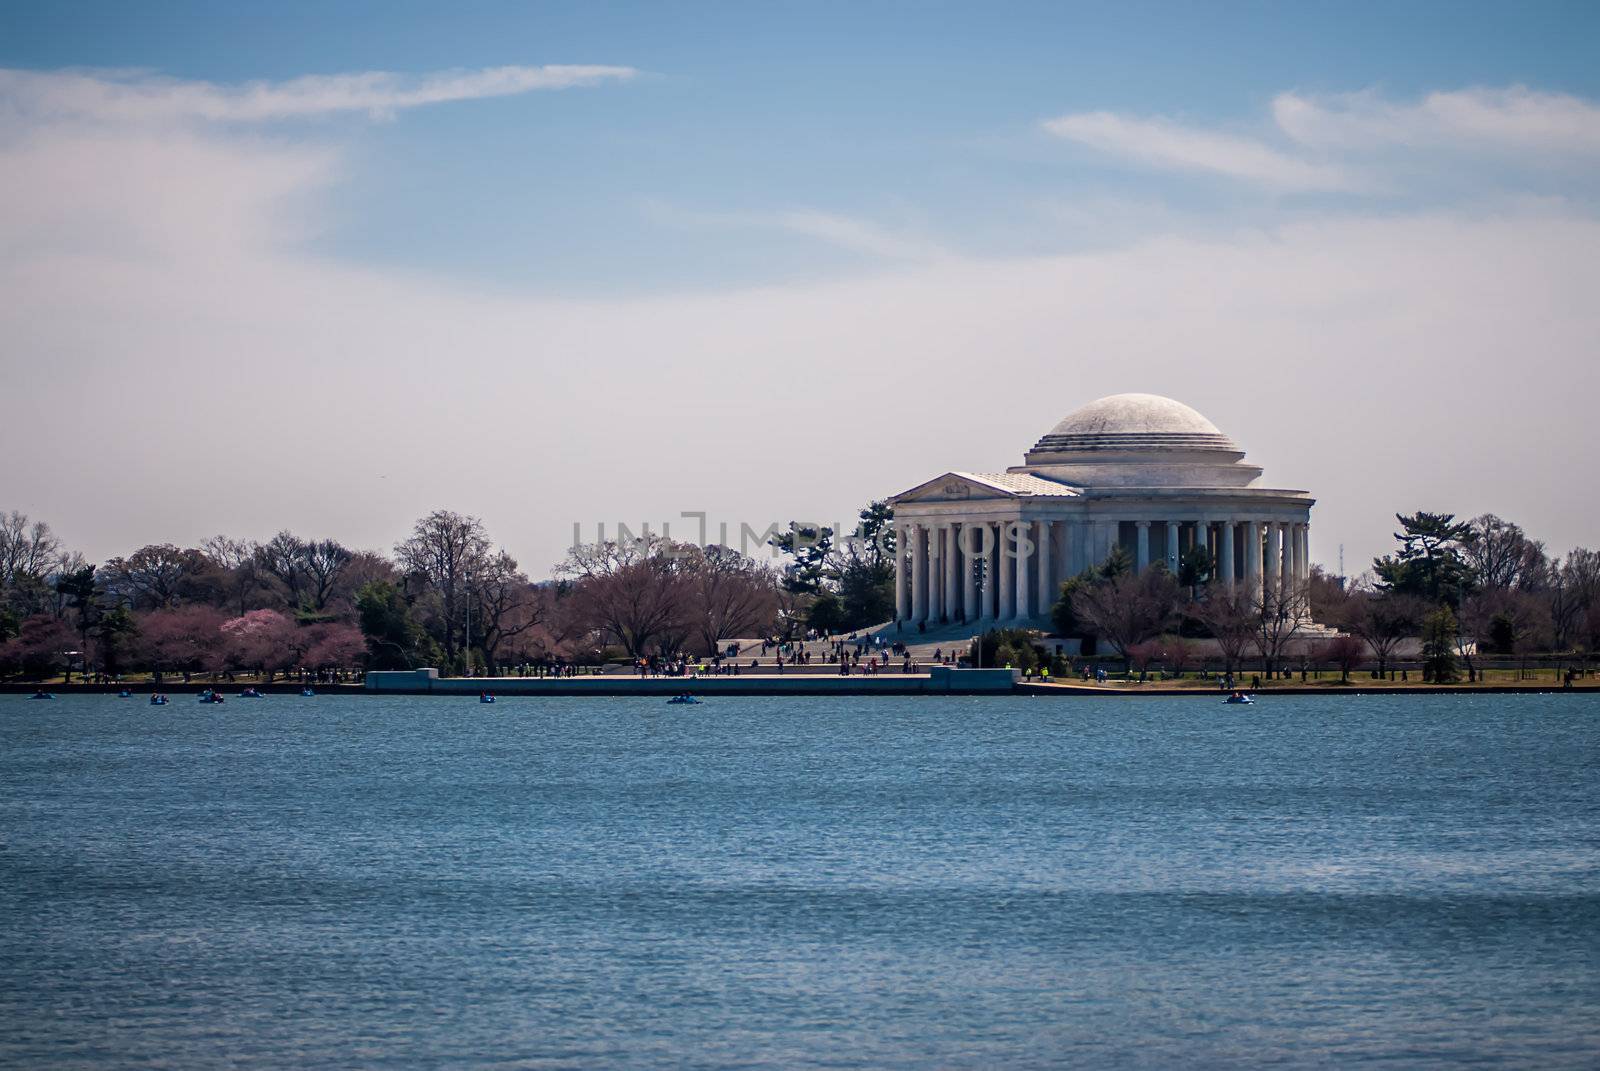 Thomas Jefferson Memorial, in Washington, DC, USA